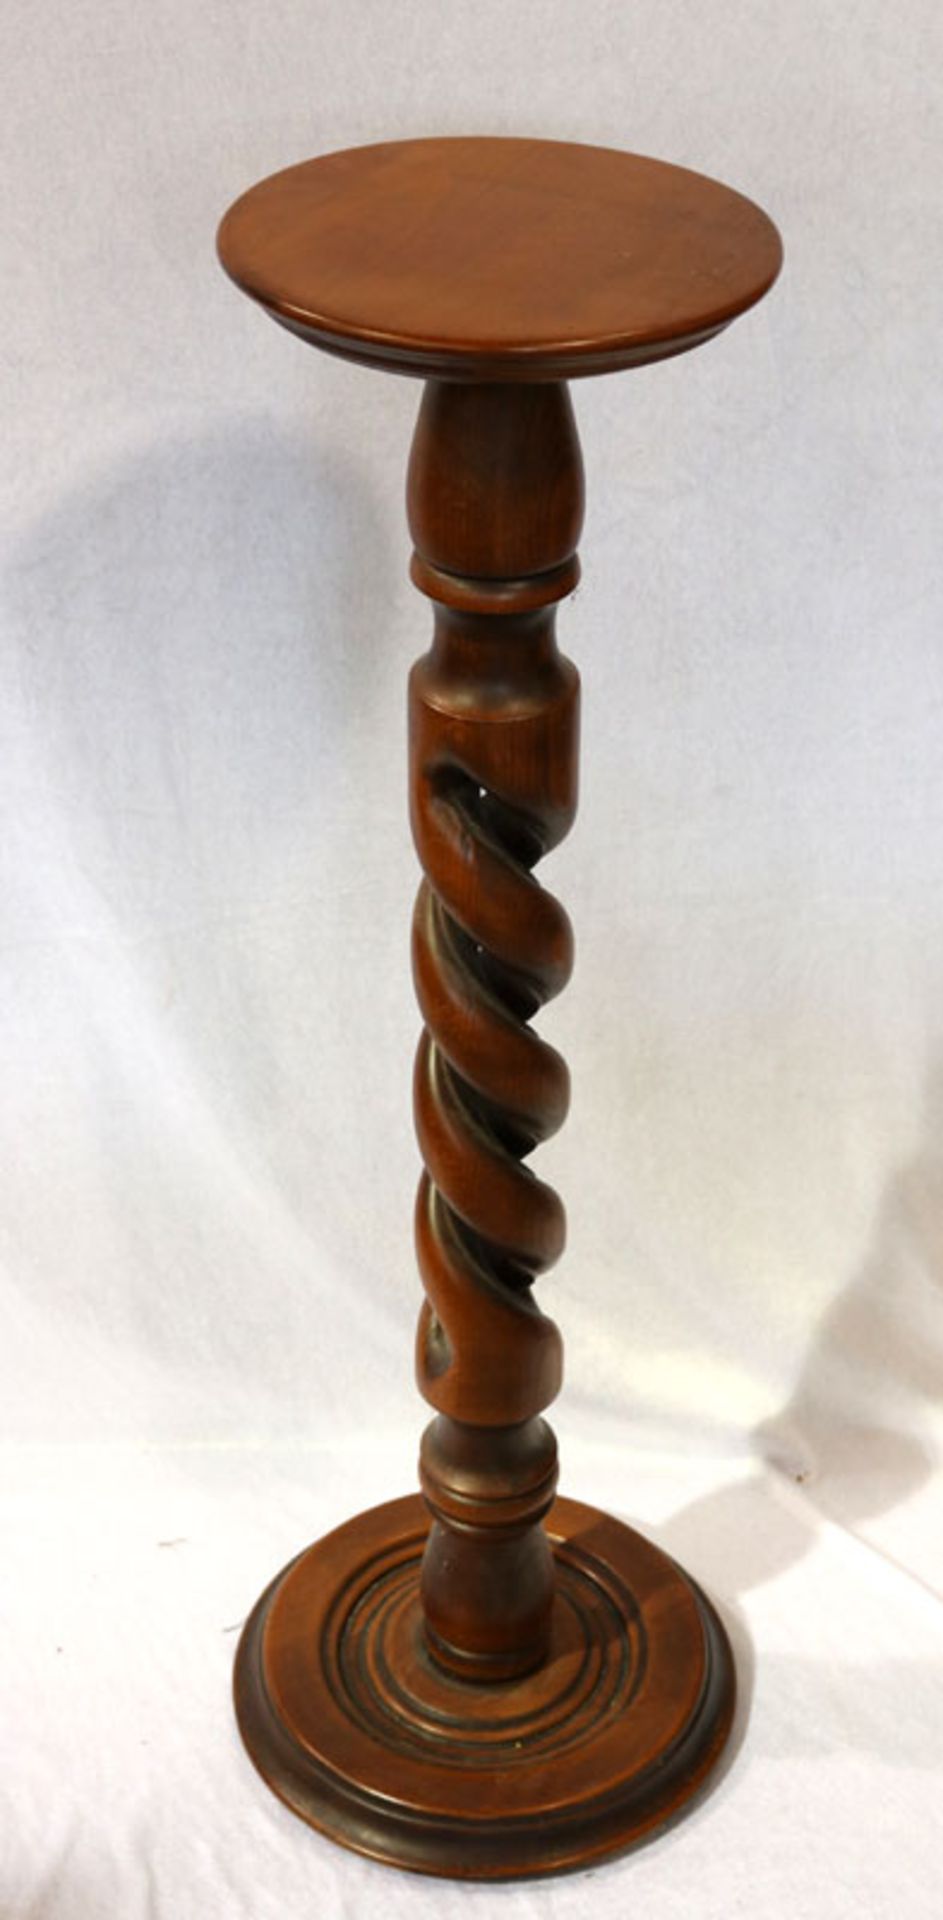 Holz Blumensäule mit gedrechseltem Fuß, H 90 cm, D 24 cm, Gebrauchsspuren